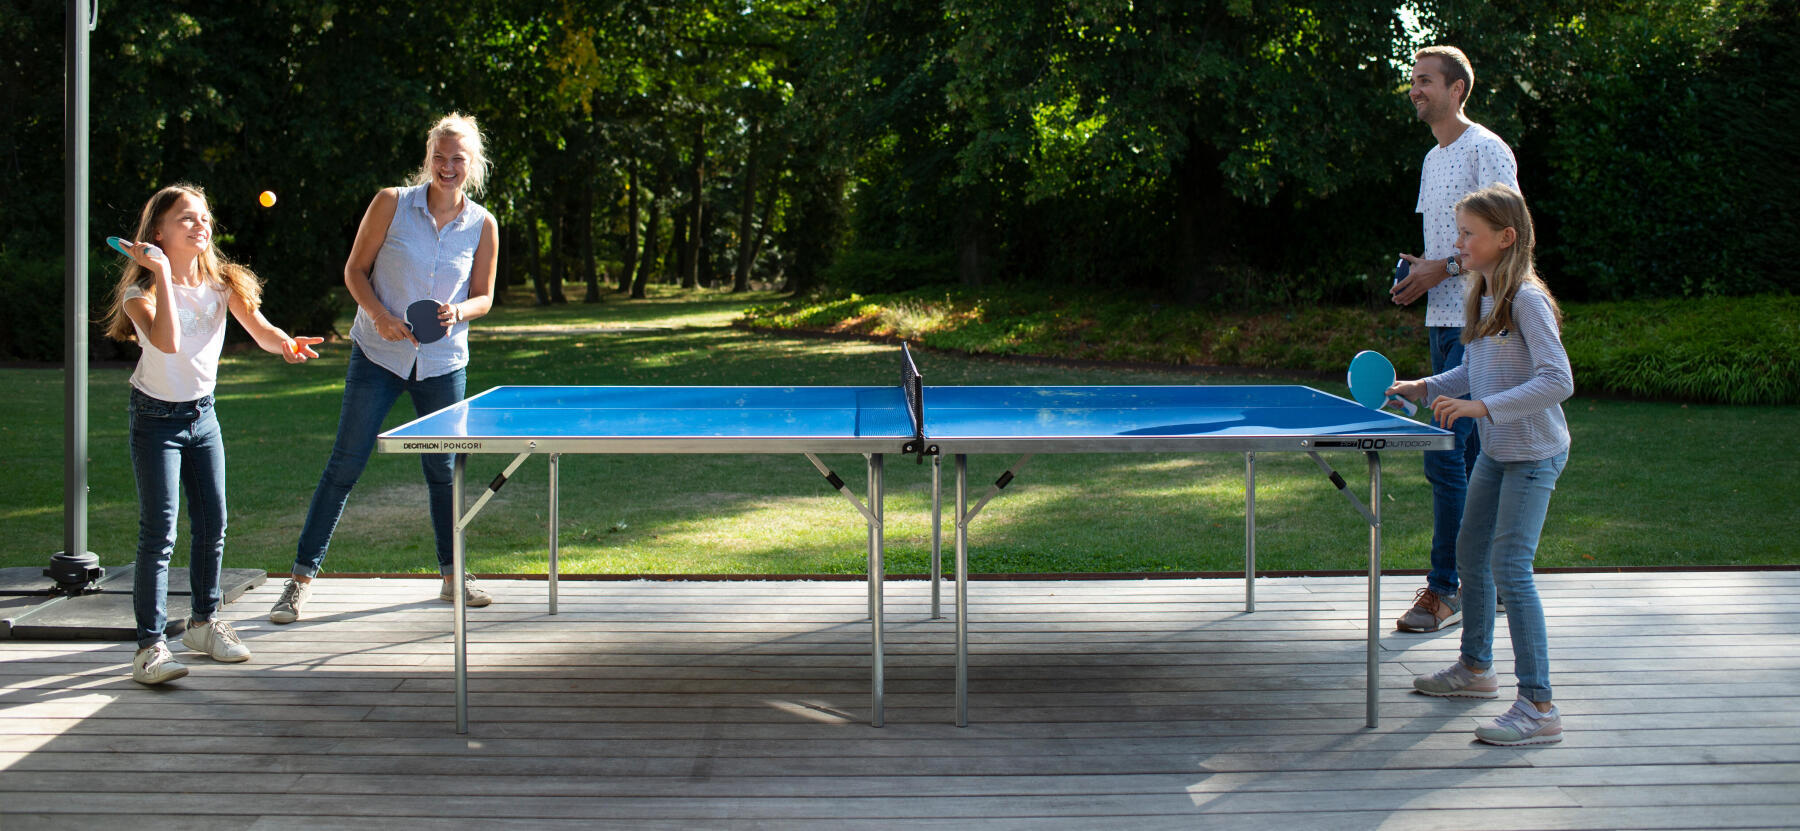 Comment choisir une table de ping pong ? 